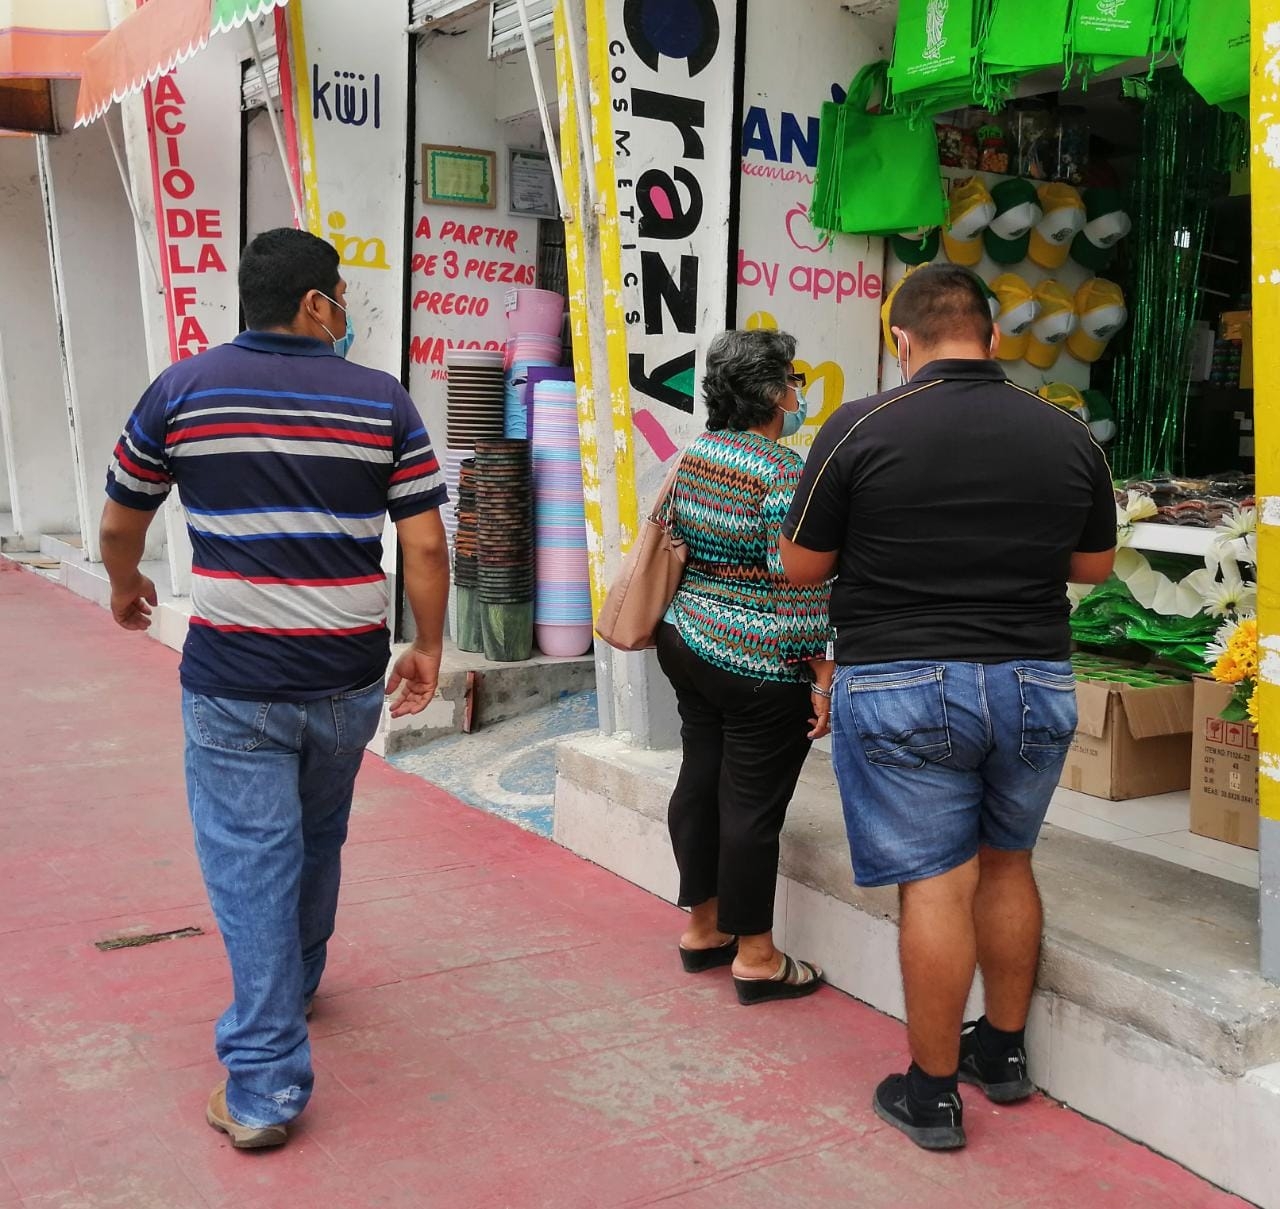 La compra de artículos se verá limitada entre las familias. Foto: Irene Barredas